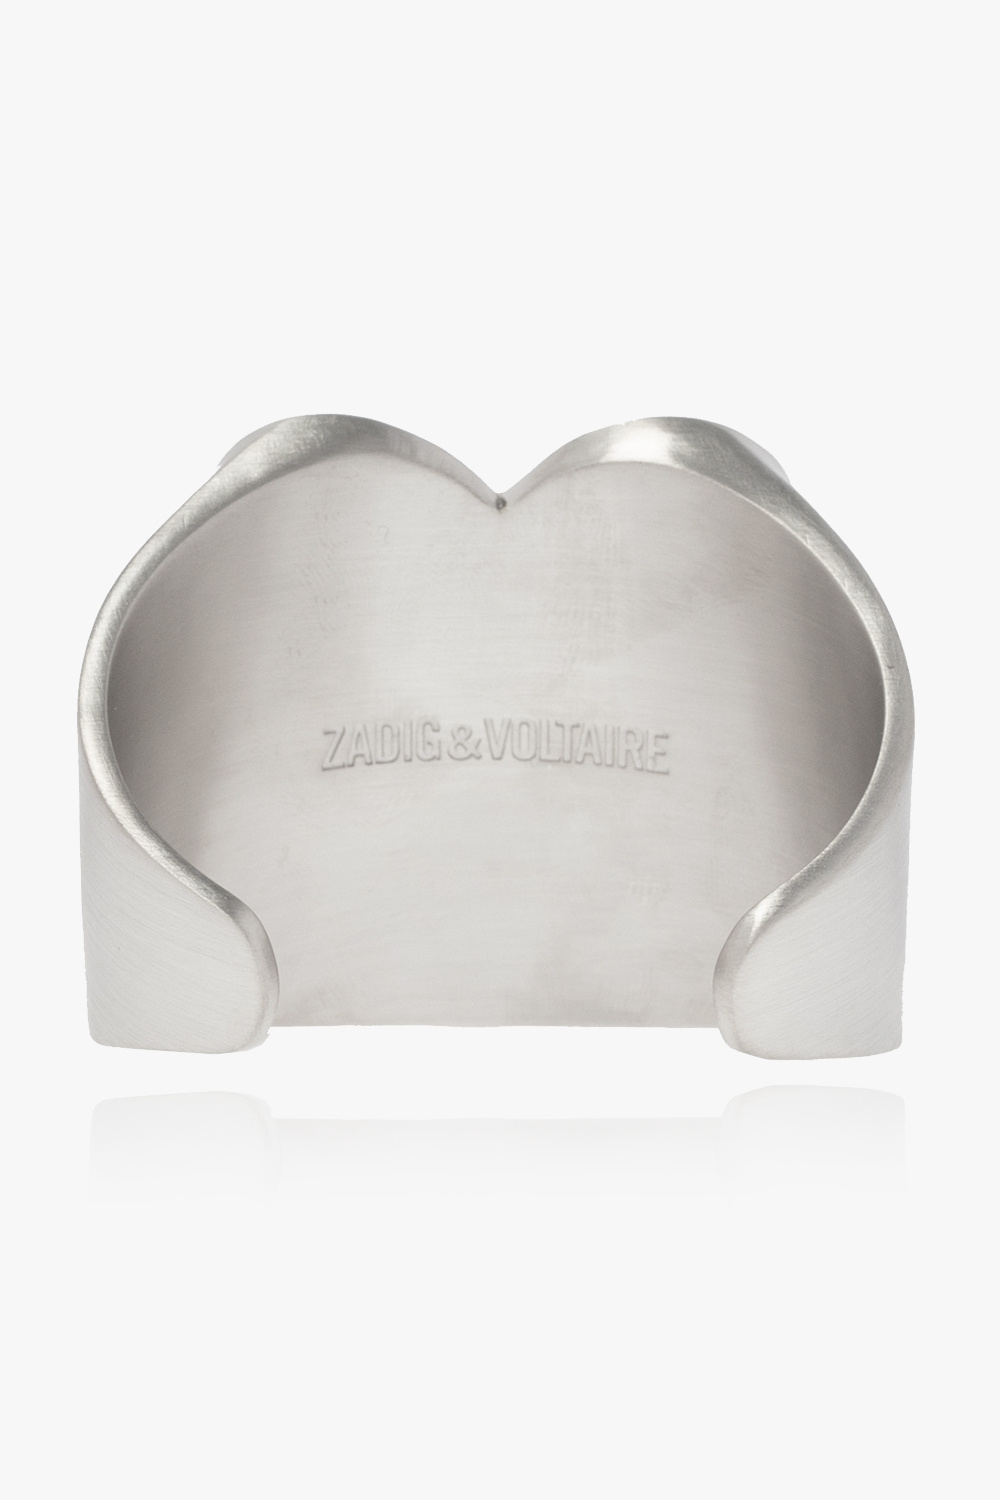 Zadig & Voltaire ‘Idol’ brass bracelet